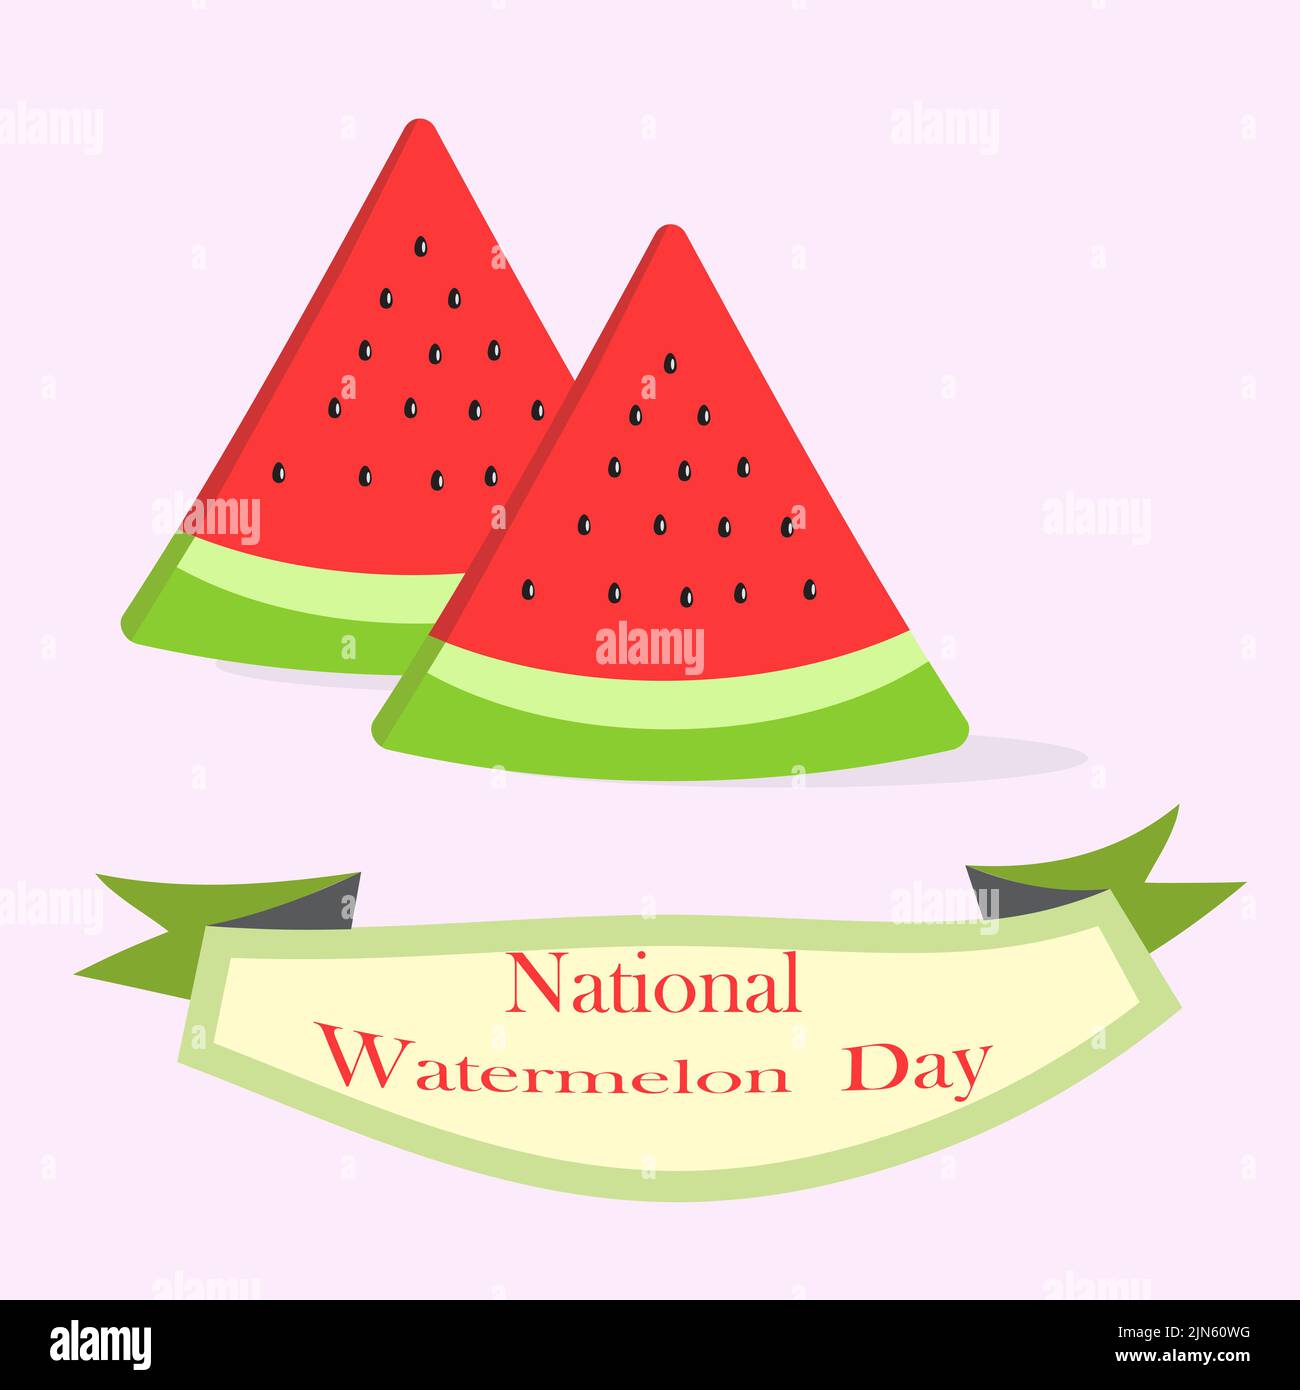 National Watermelon Day, Vektor-Illustration Design. Scheiben Wassermelone auf dem rosa Hintergrund. Schönes Design zur Begrüßung mit Watermelon Day. Stock Vektor